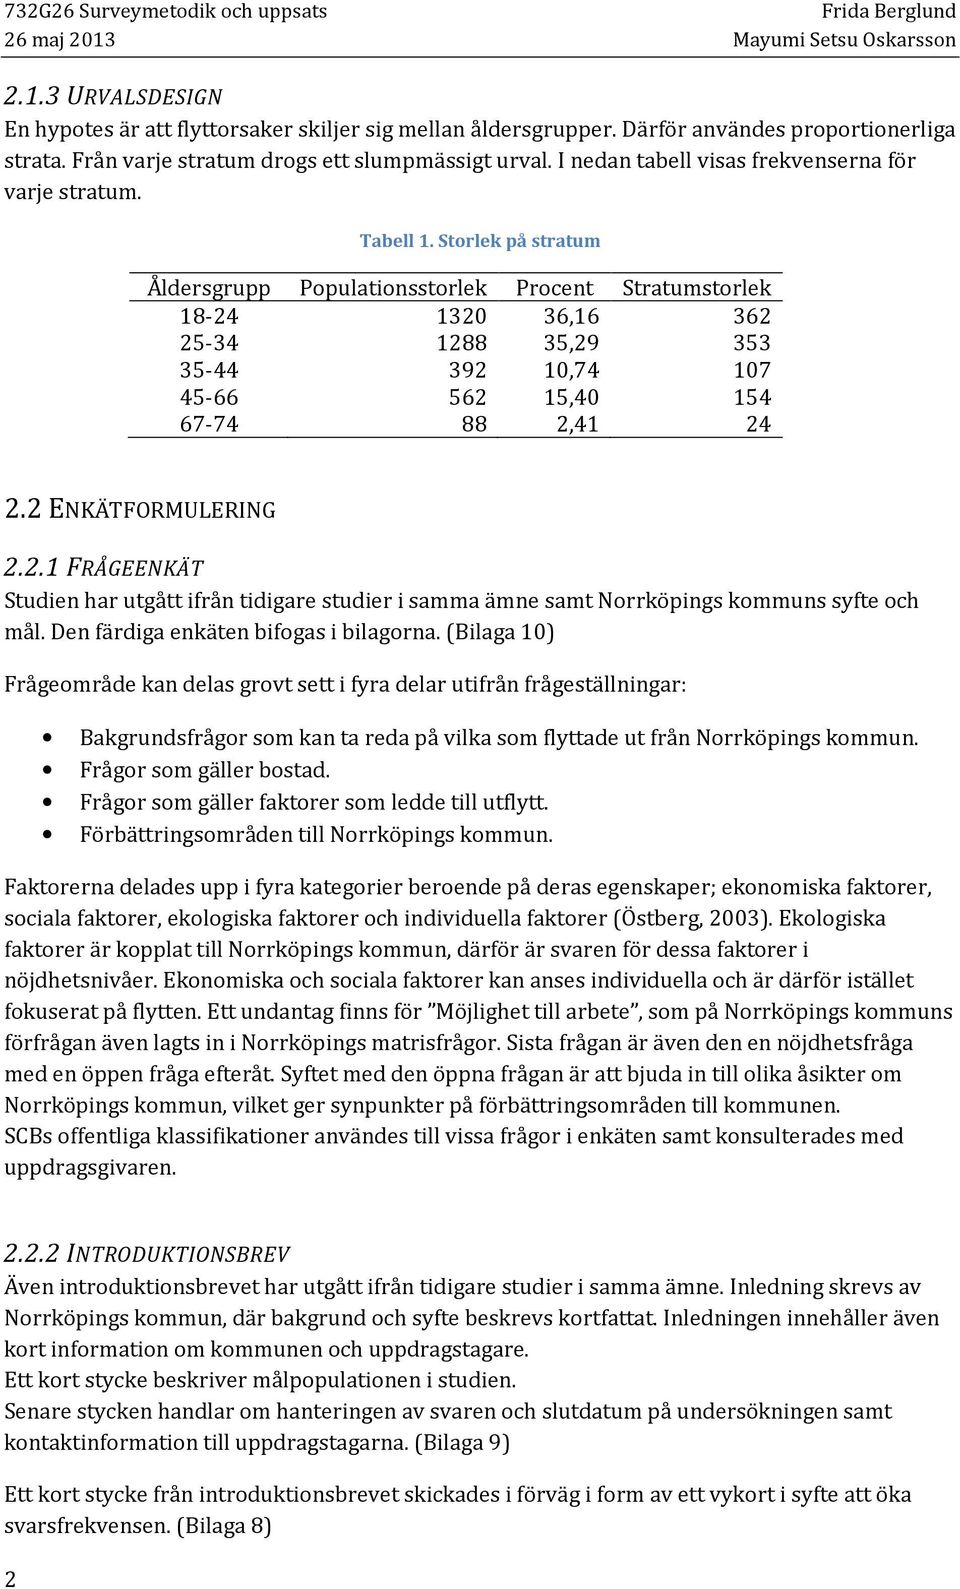 Storlek på stratum Åldersgrupp Populationsstorlek Procent Stratumstorlek 18-24 1320 36,16 362 25-34 1288 35,29 353 35-44 392 10,74 107 45-66 562 15,40 154 67-74 88 2,41 24 2.2 ENKÄTFORMULERING 2.2.1 FRÅGEENKÄT Studien har utgått ifrån tidigare studier i samma ämne samt Norrköpings kommuns syfte och mål.